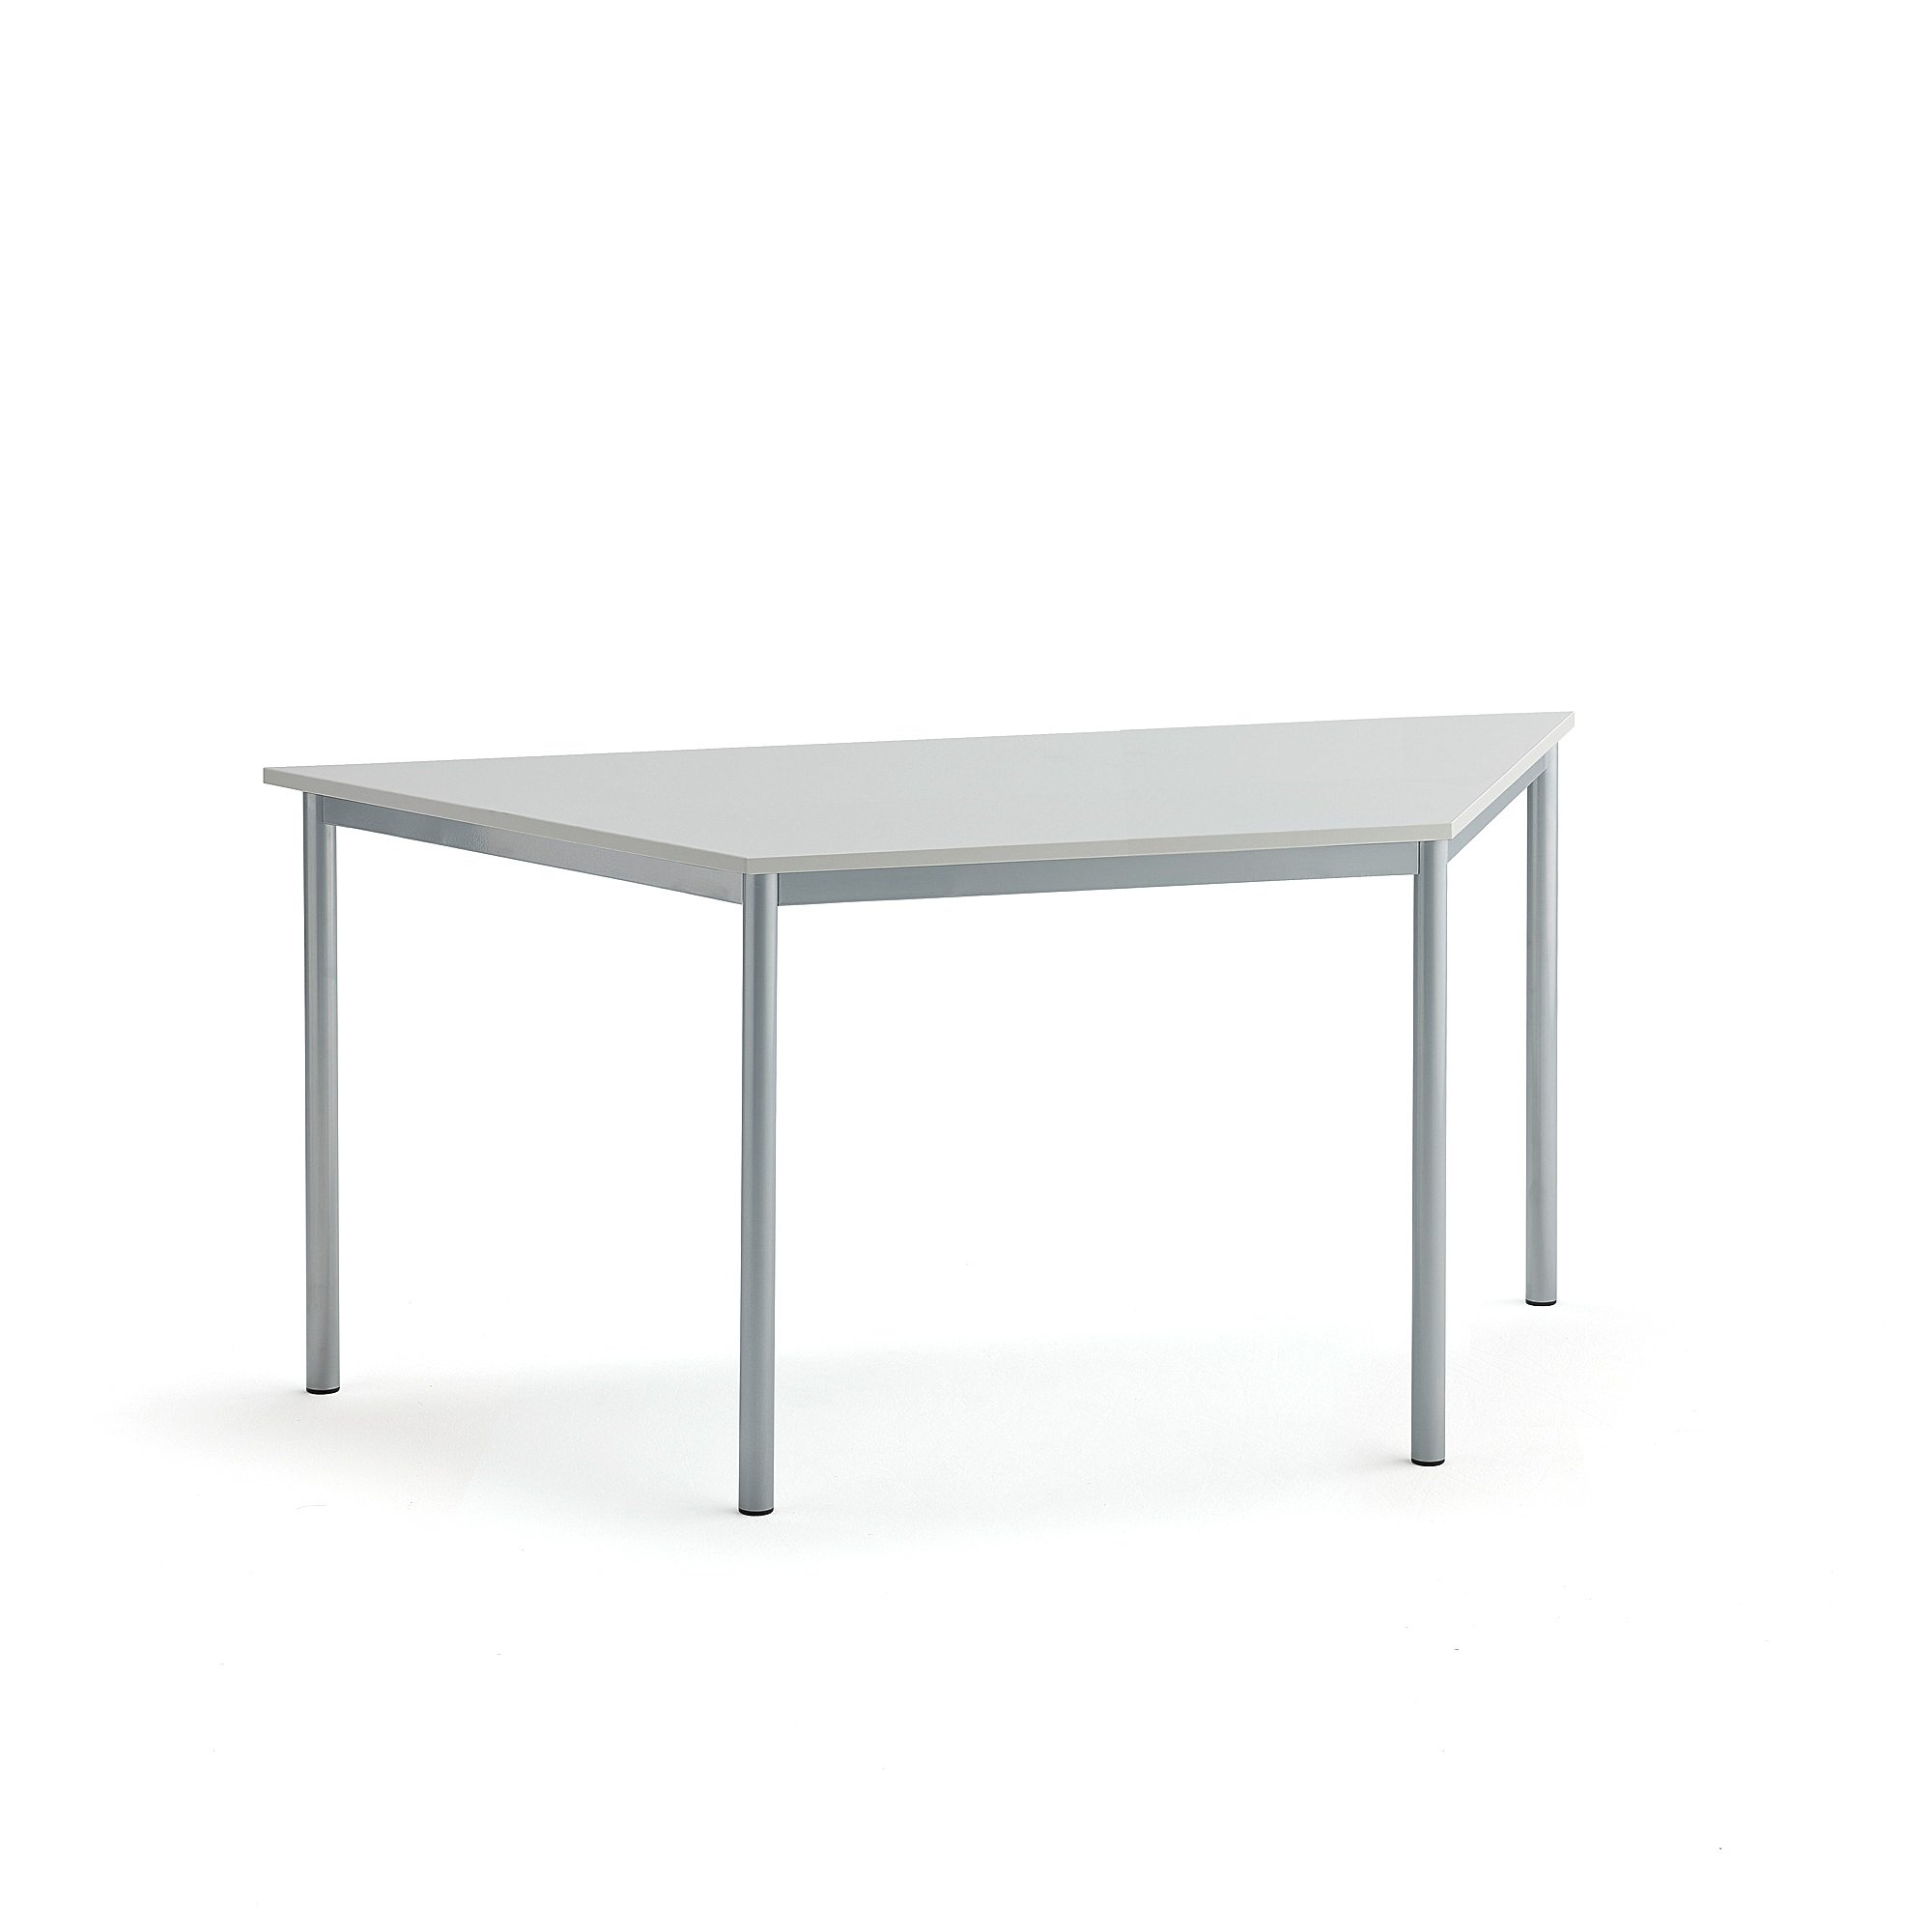 Stůl SONITUS TRAPETS, 1600x800x720 mm, stříbrné nohy, HPL deska tlumící hluk, šedá